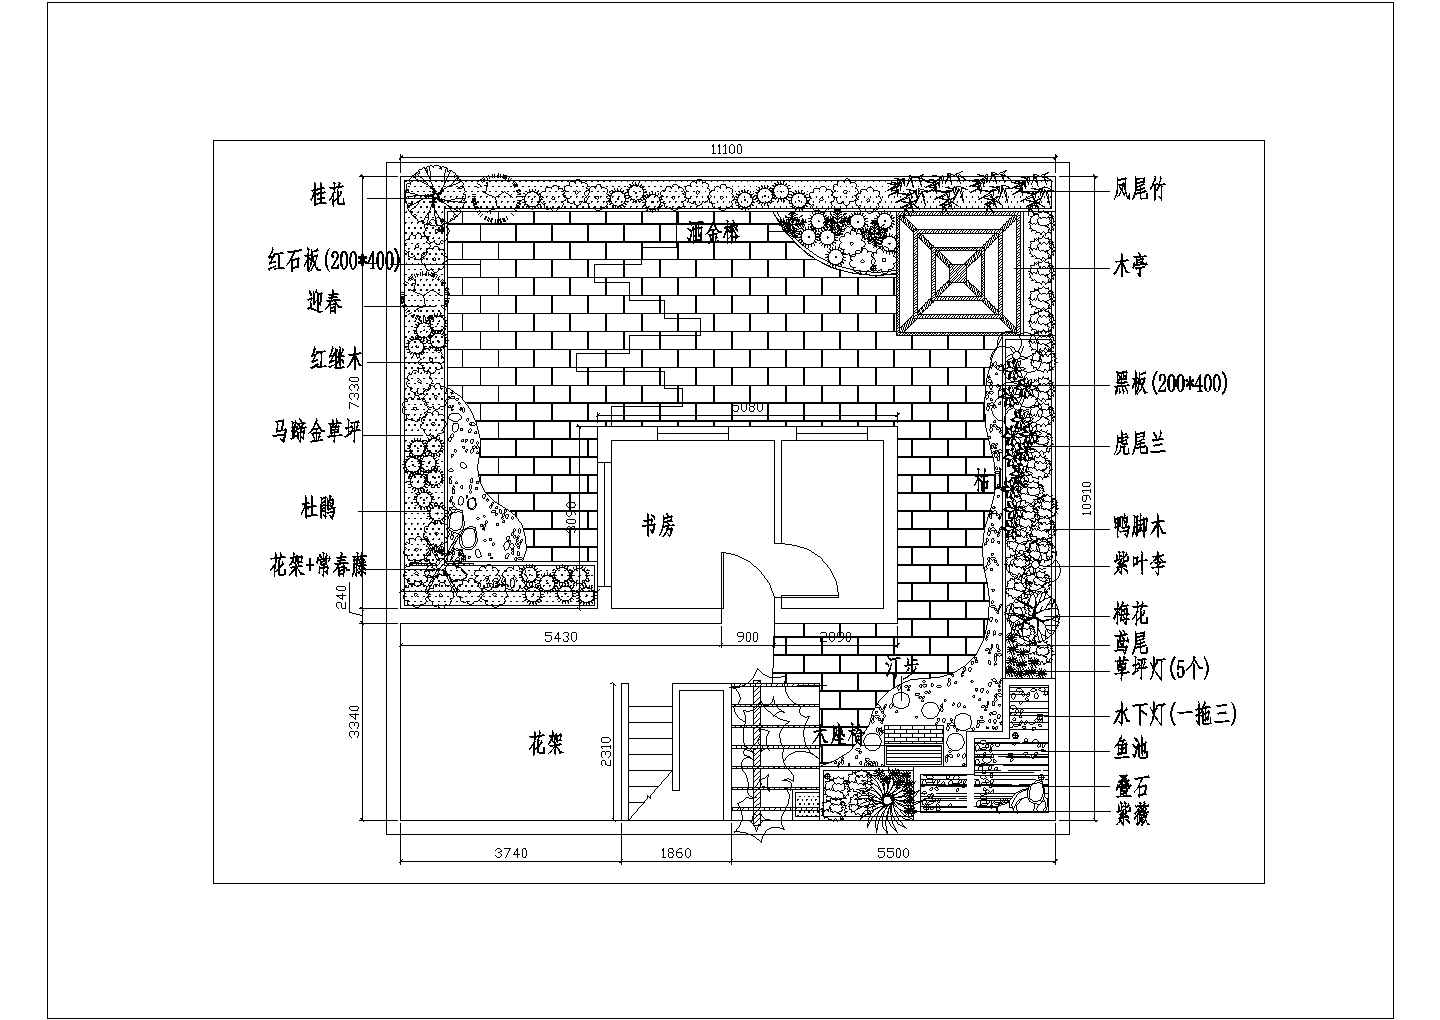 温州市鑫耀大厦商业办公楼屋顶景观花园平面绿化设计CAD图纸